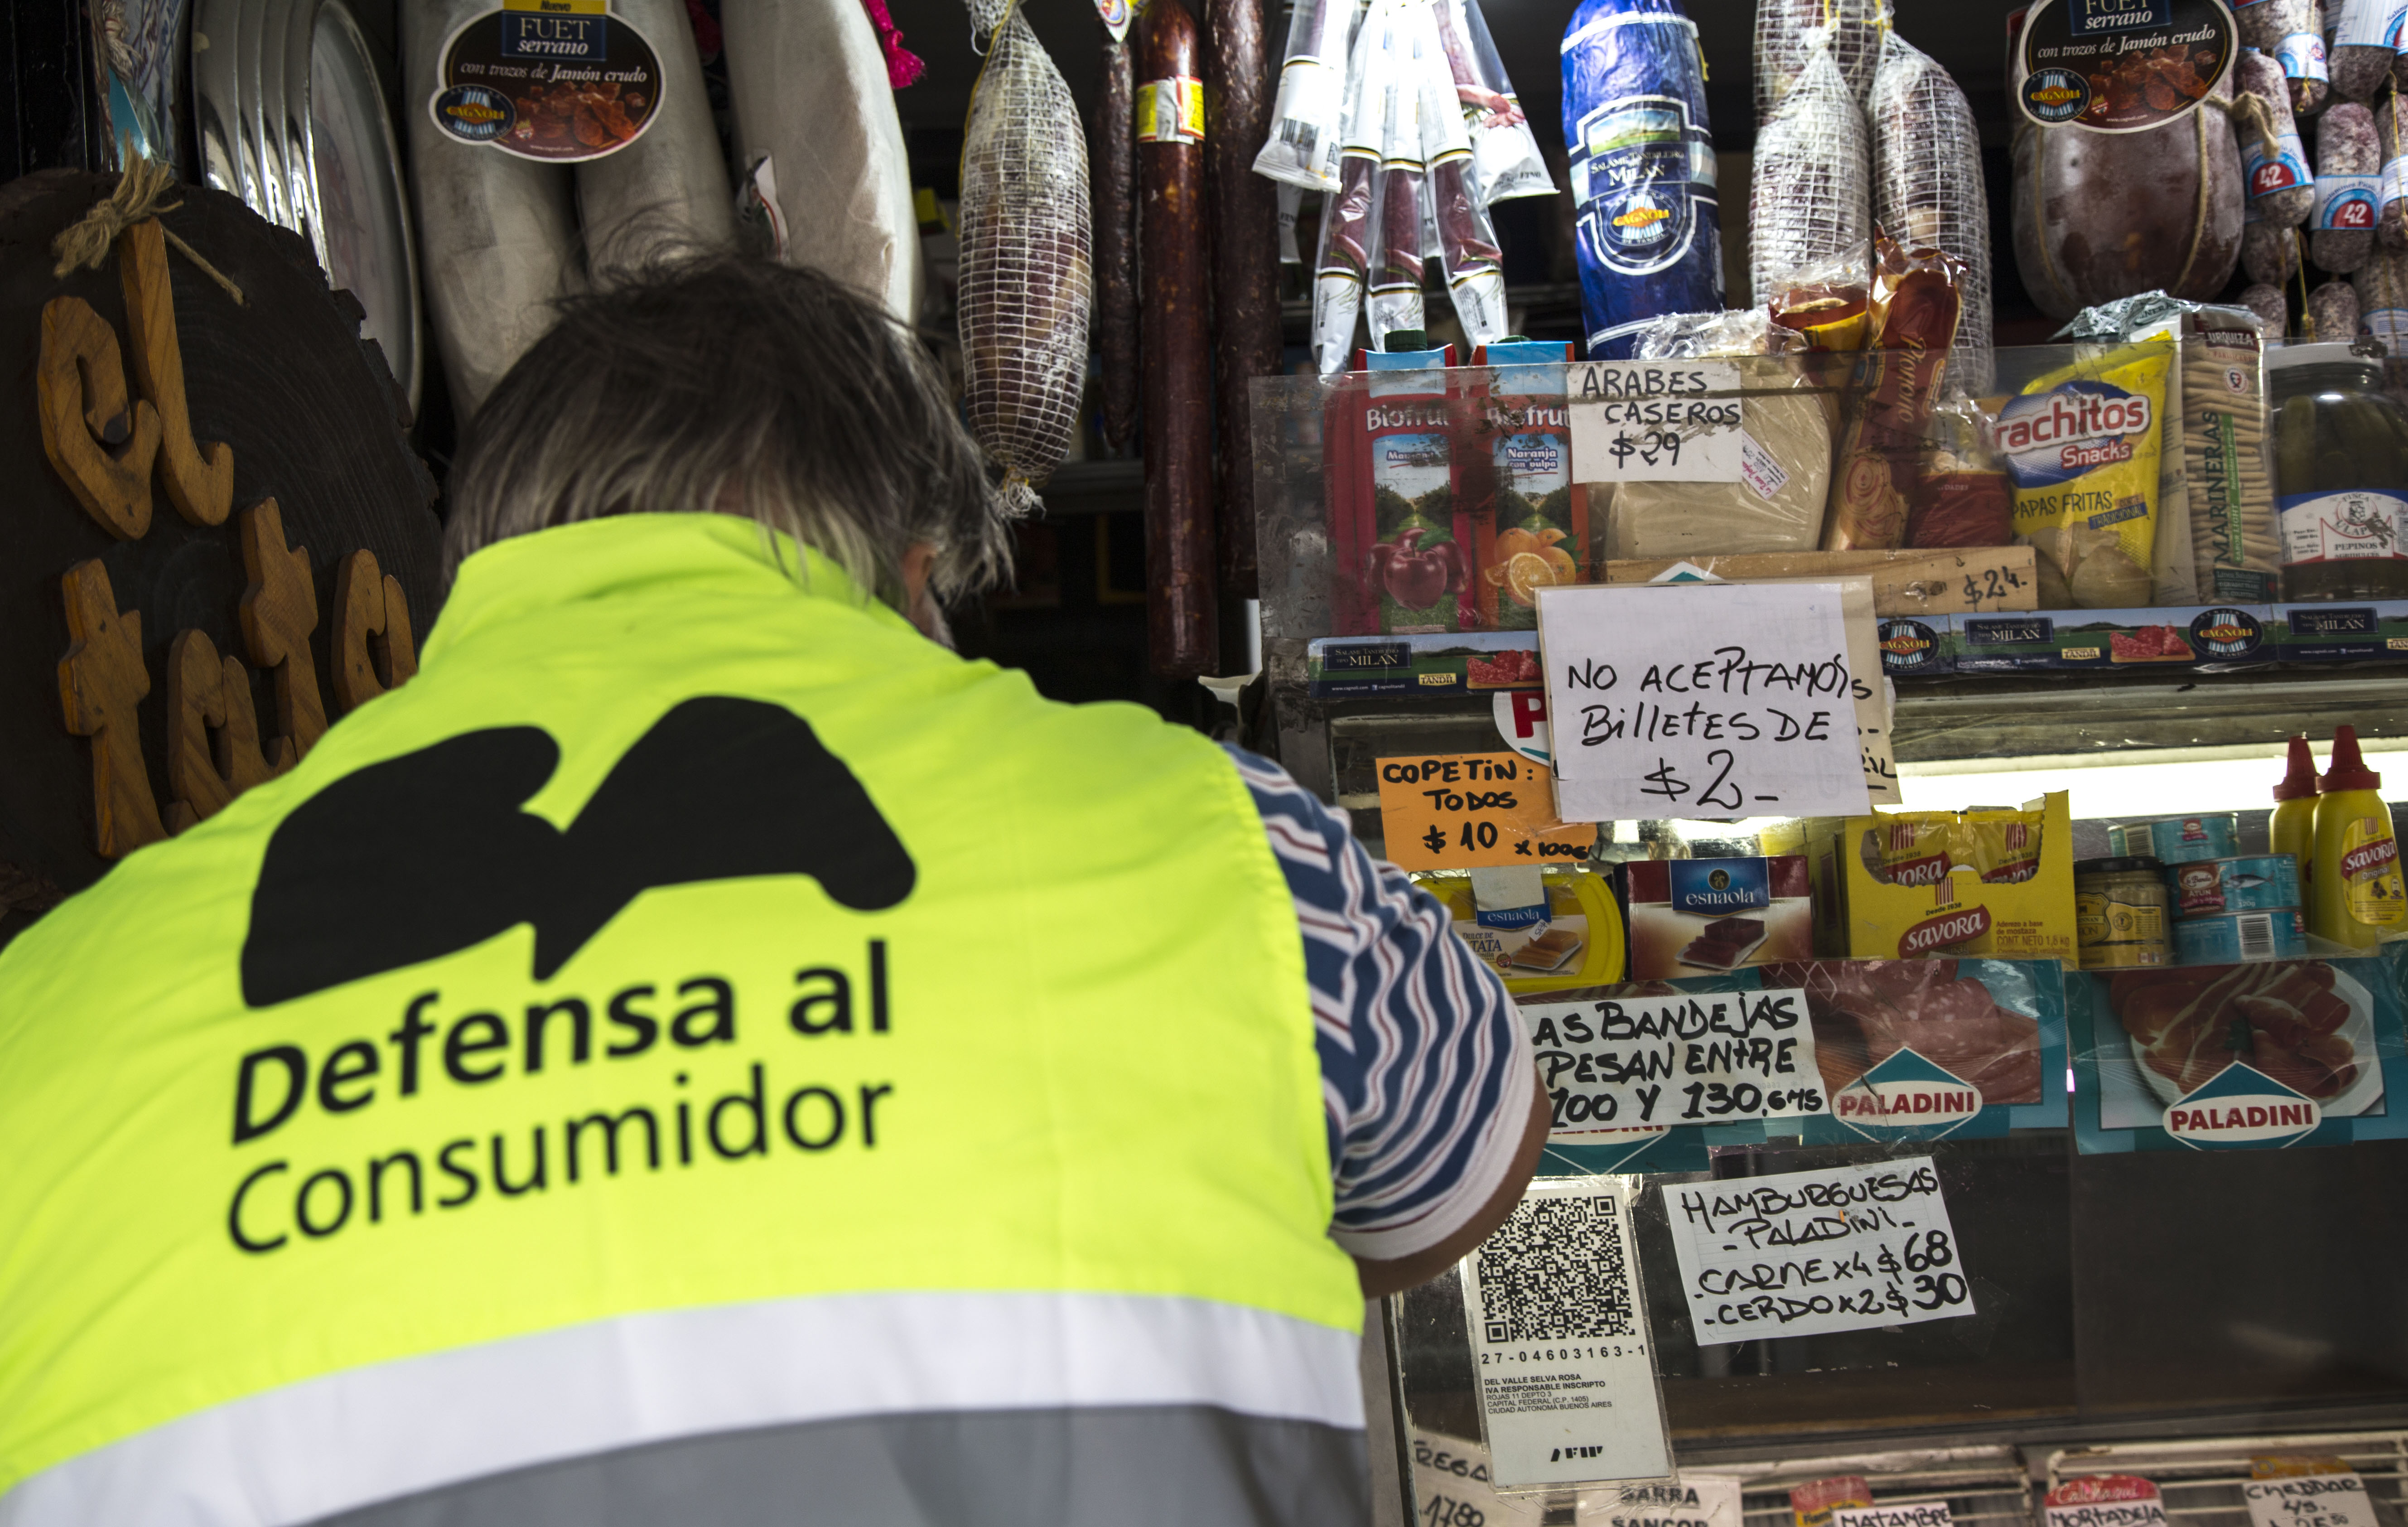 Sancionarán a los comercios que no acepten billetes de 2 pesos en abril